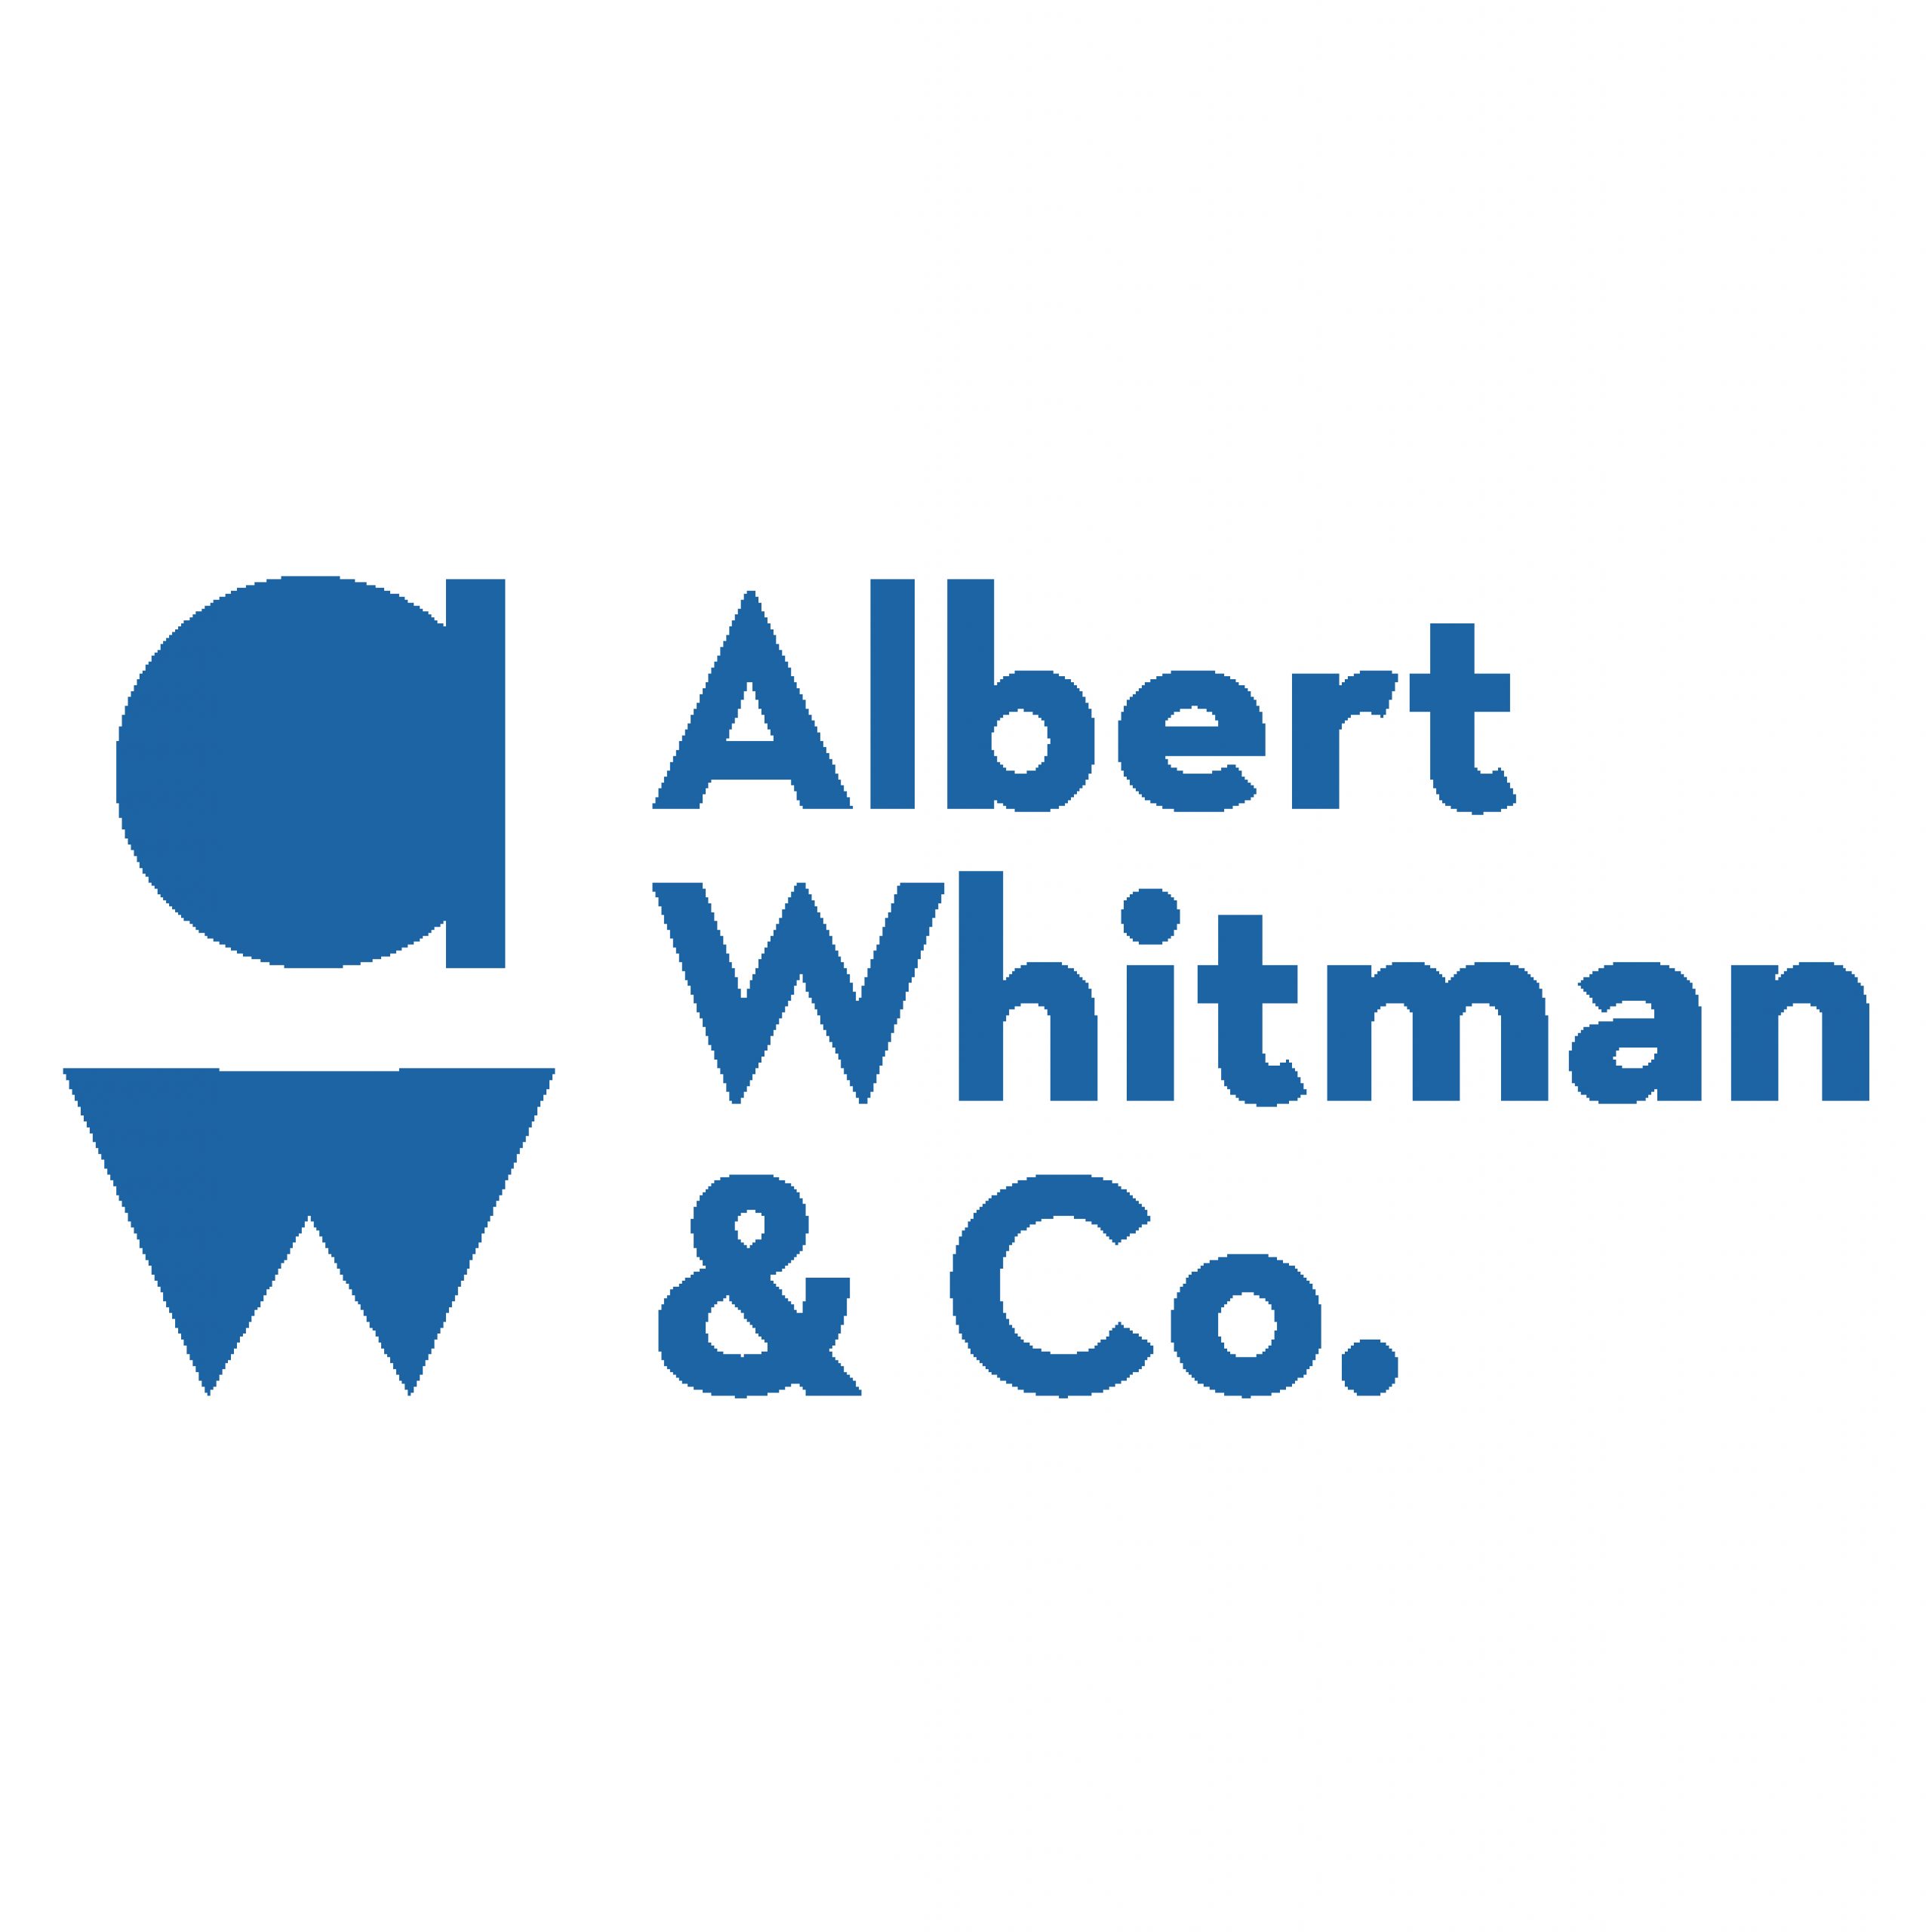 Albert Whitman